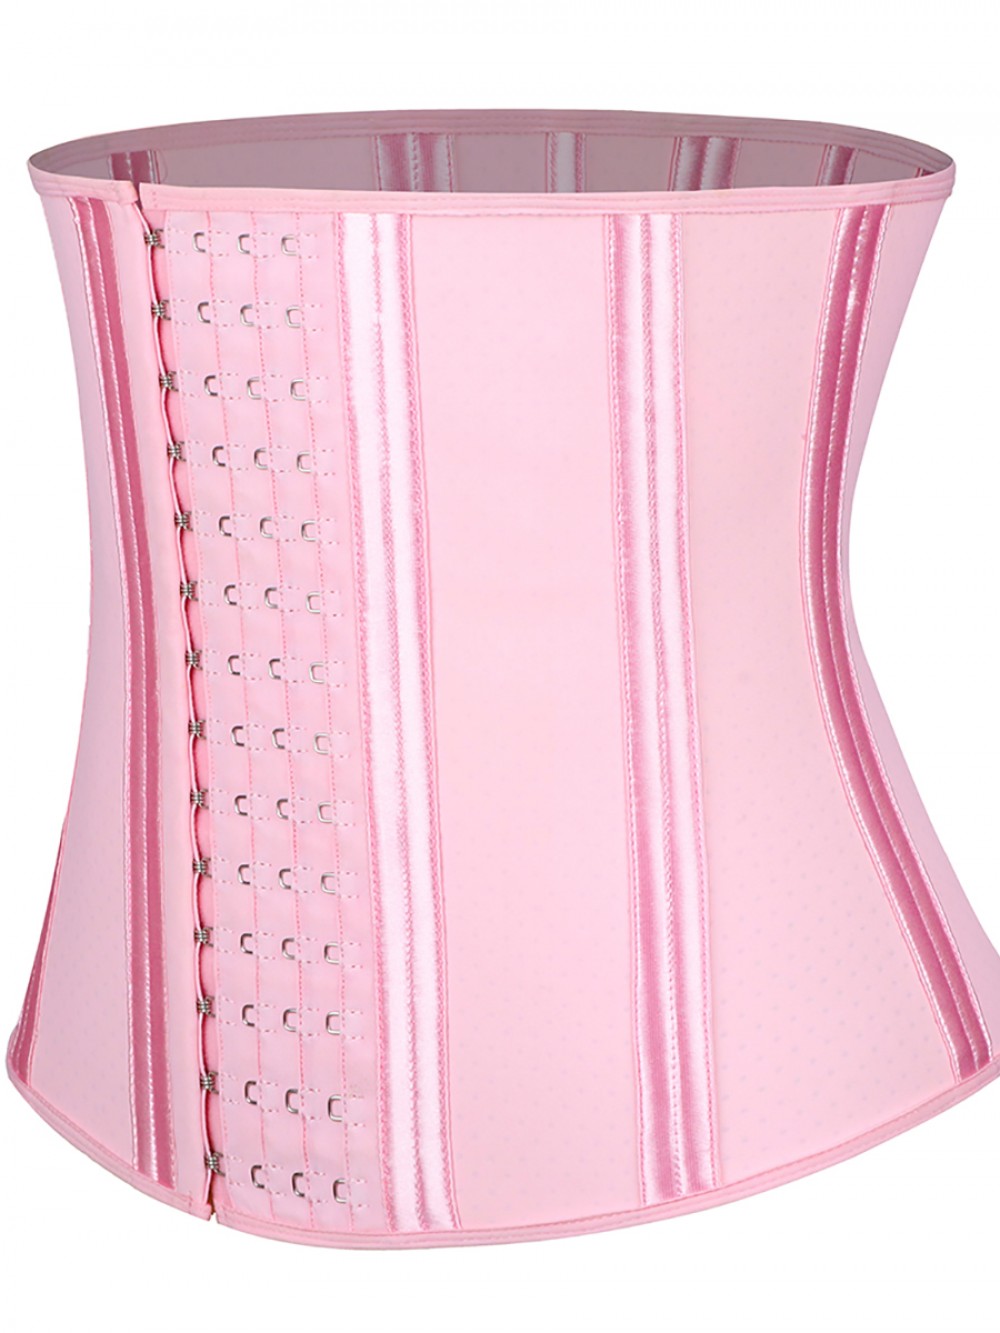 Pink 4 Rows Hook Latex Waist Cincher Belt Three-Layer Waist Control